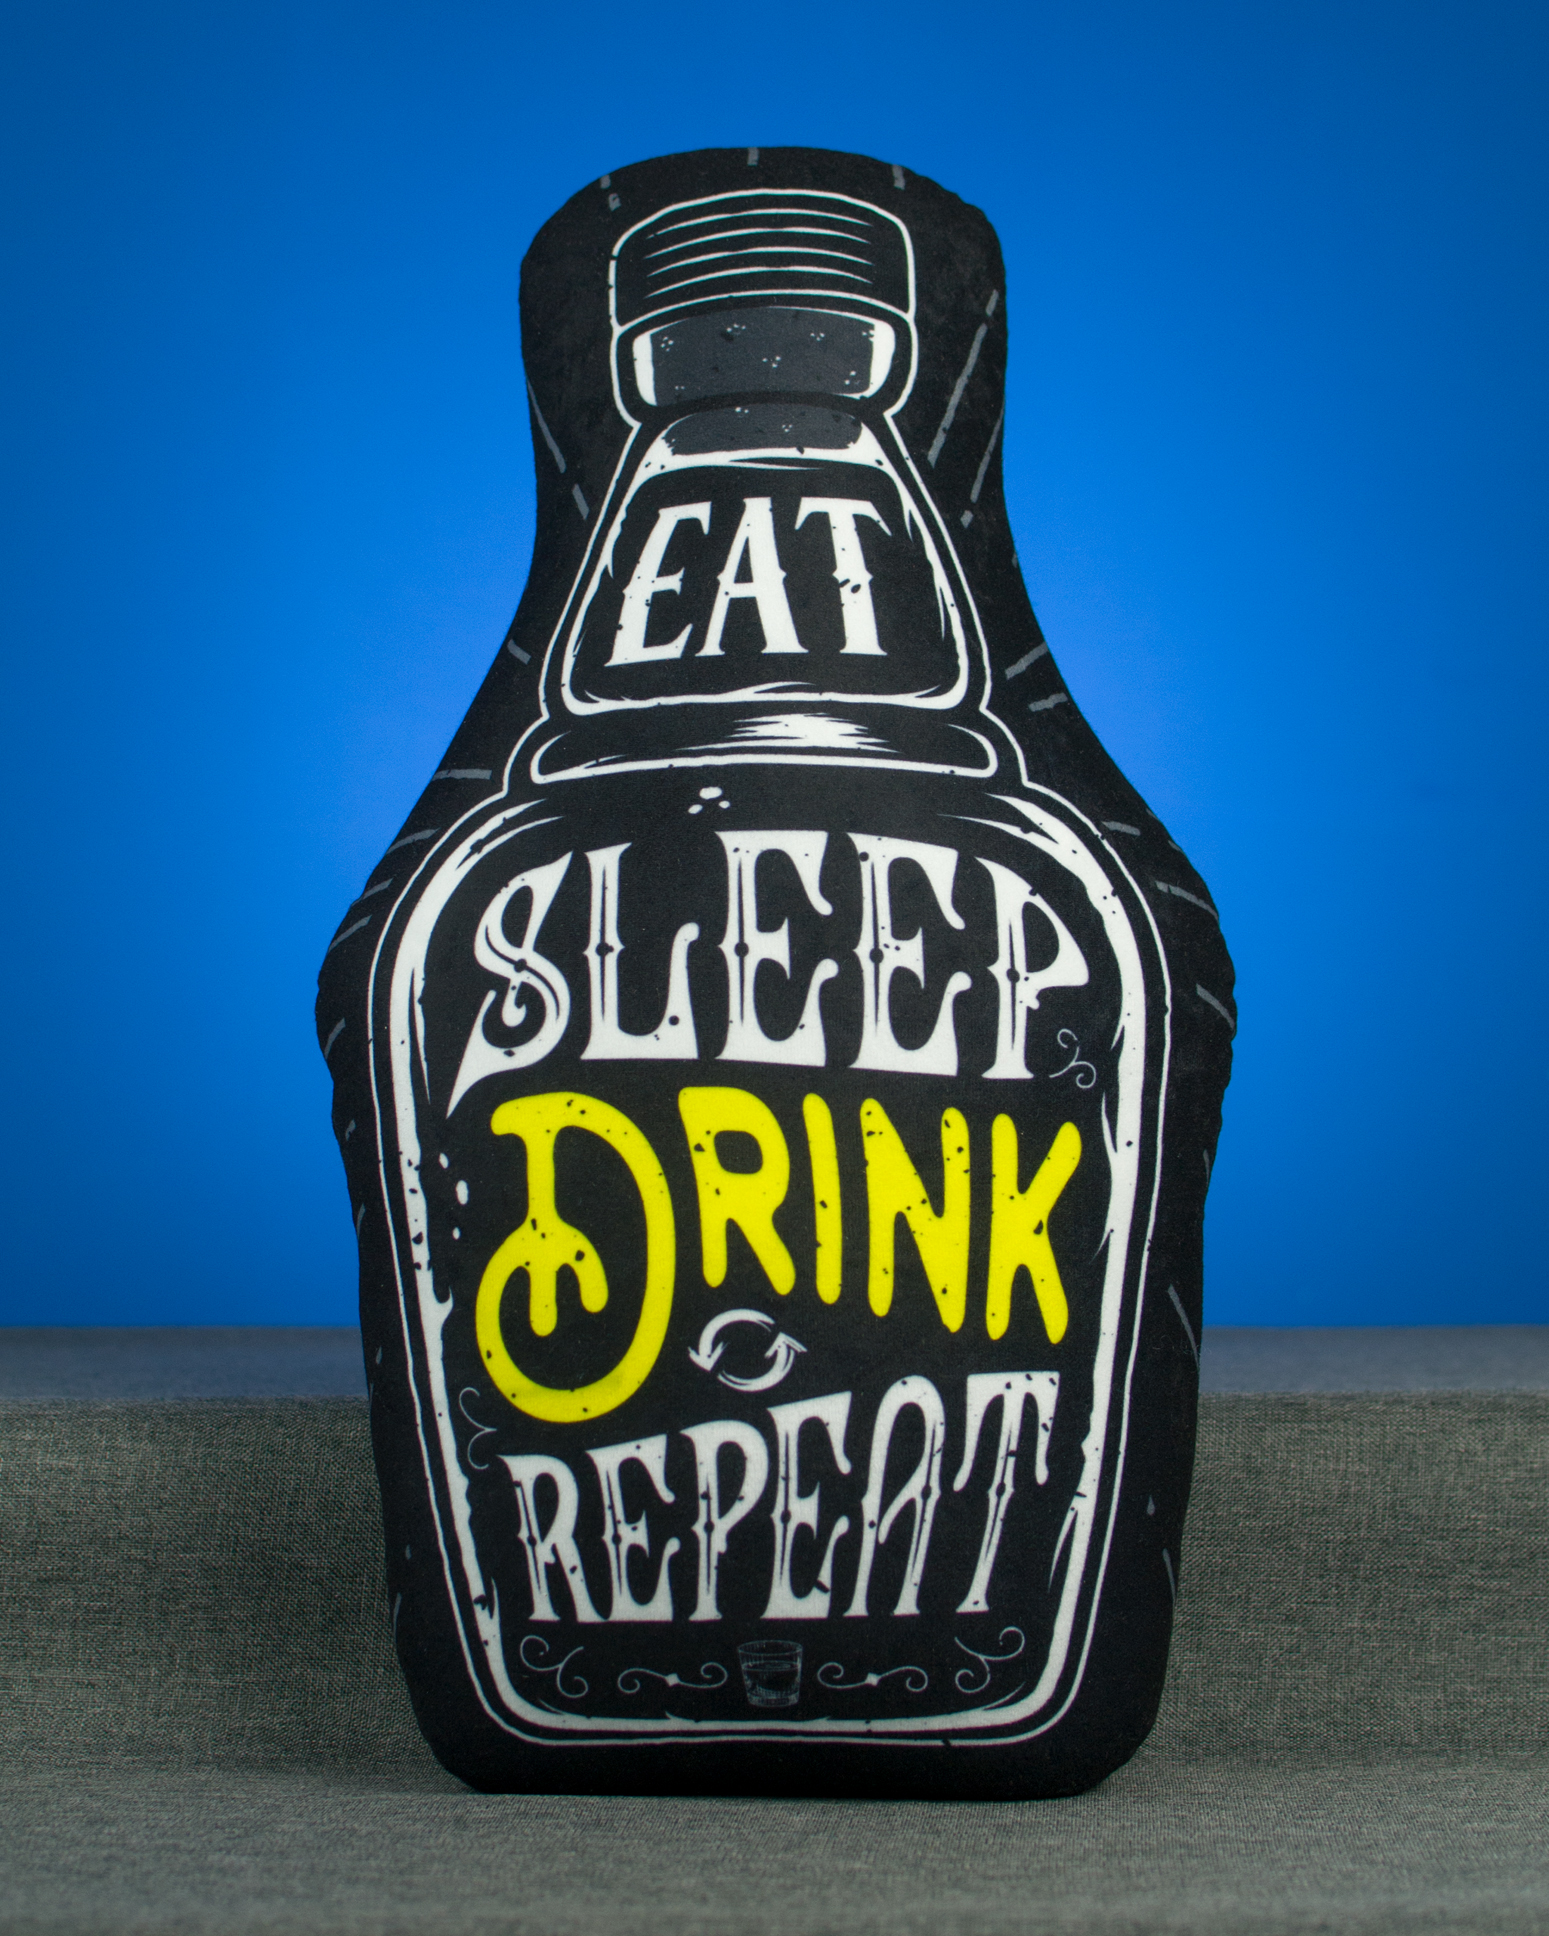 Eat Sleep Drink Repeat